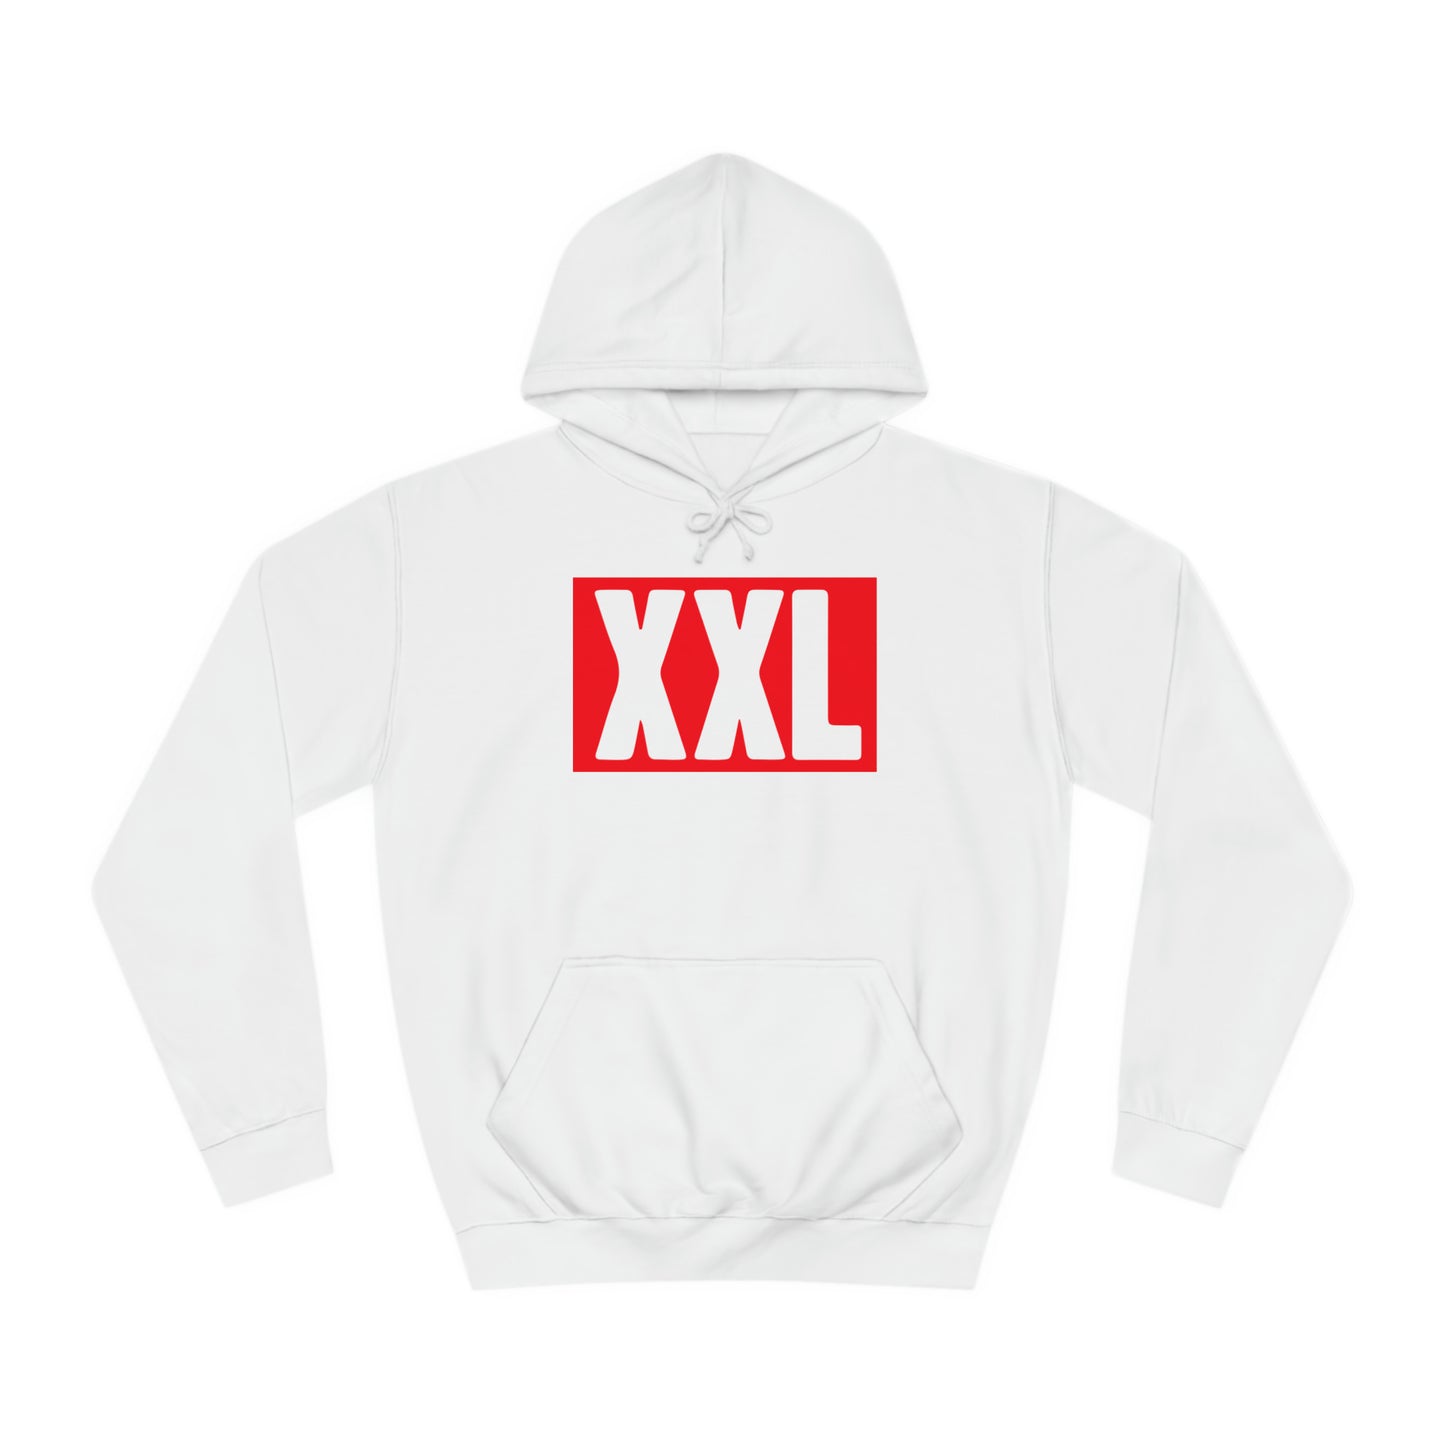 XXL Logo Hoodie